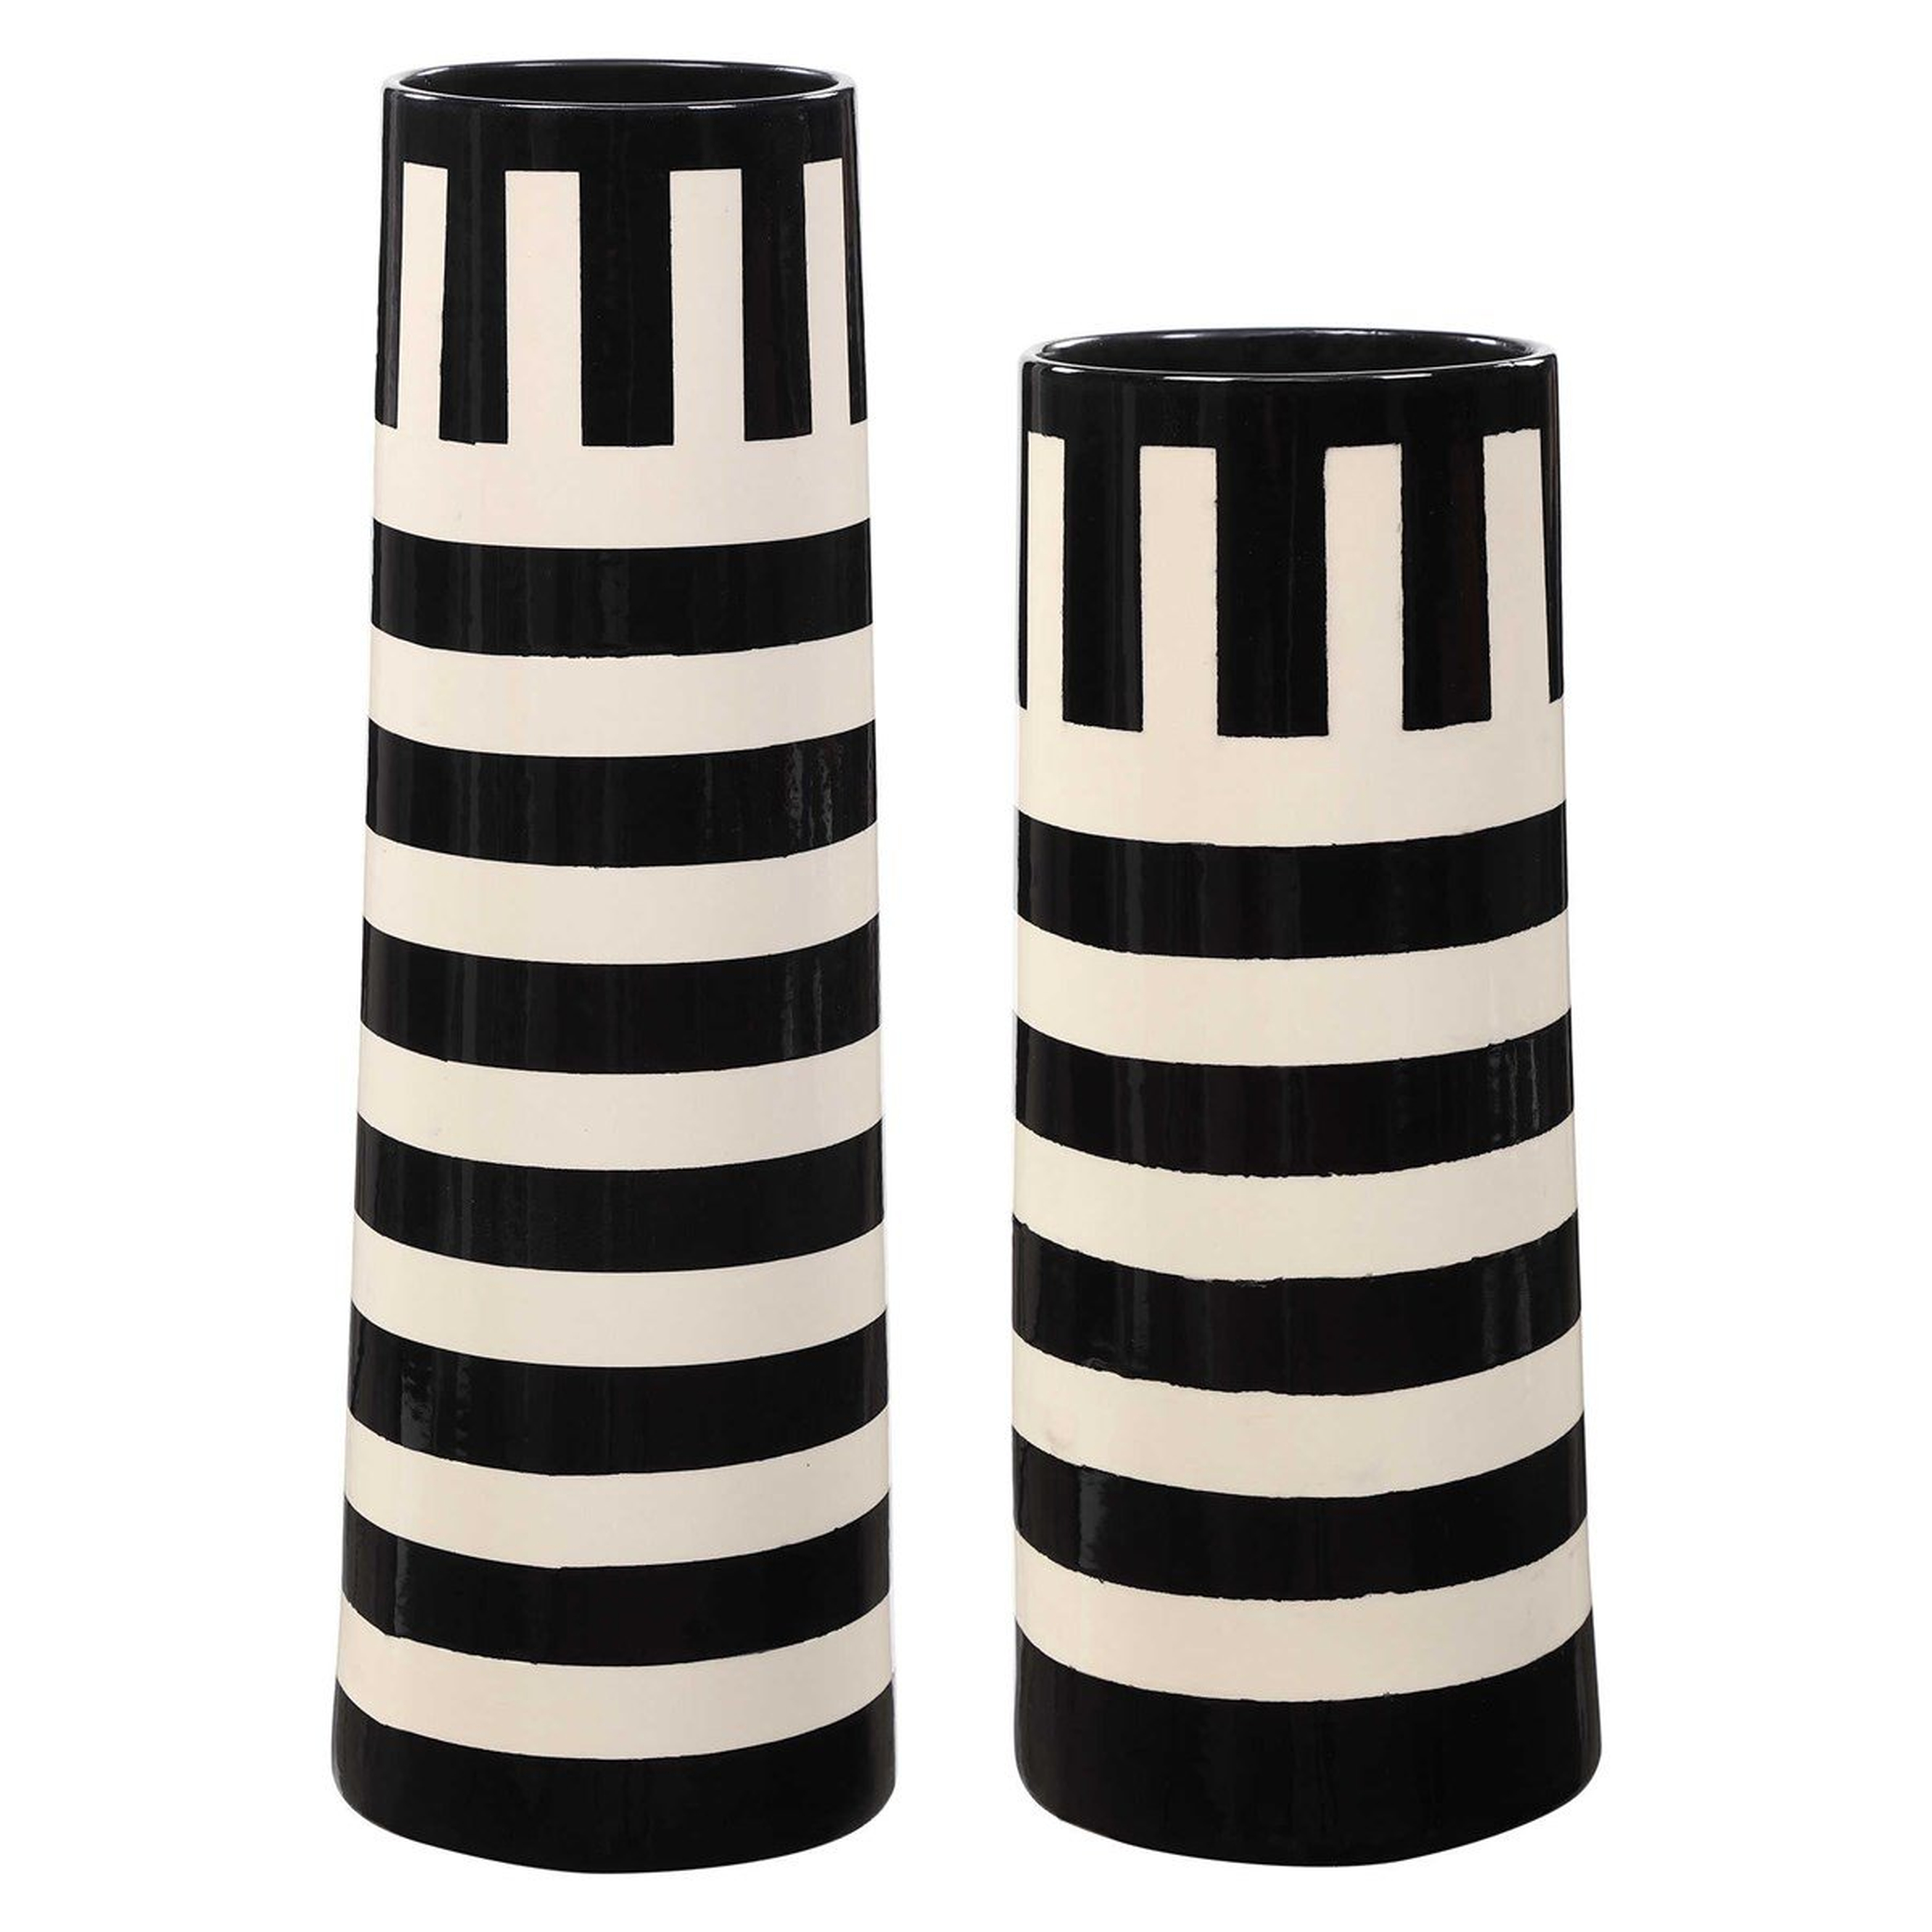 Amhara Vases, Black & White, Set of 2 - Hudsonhill Foundry